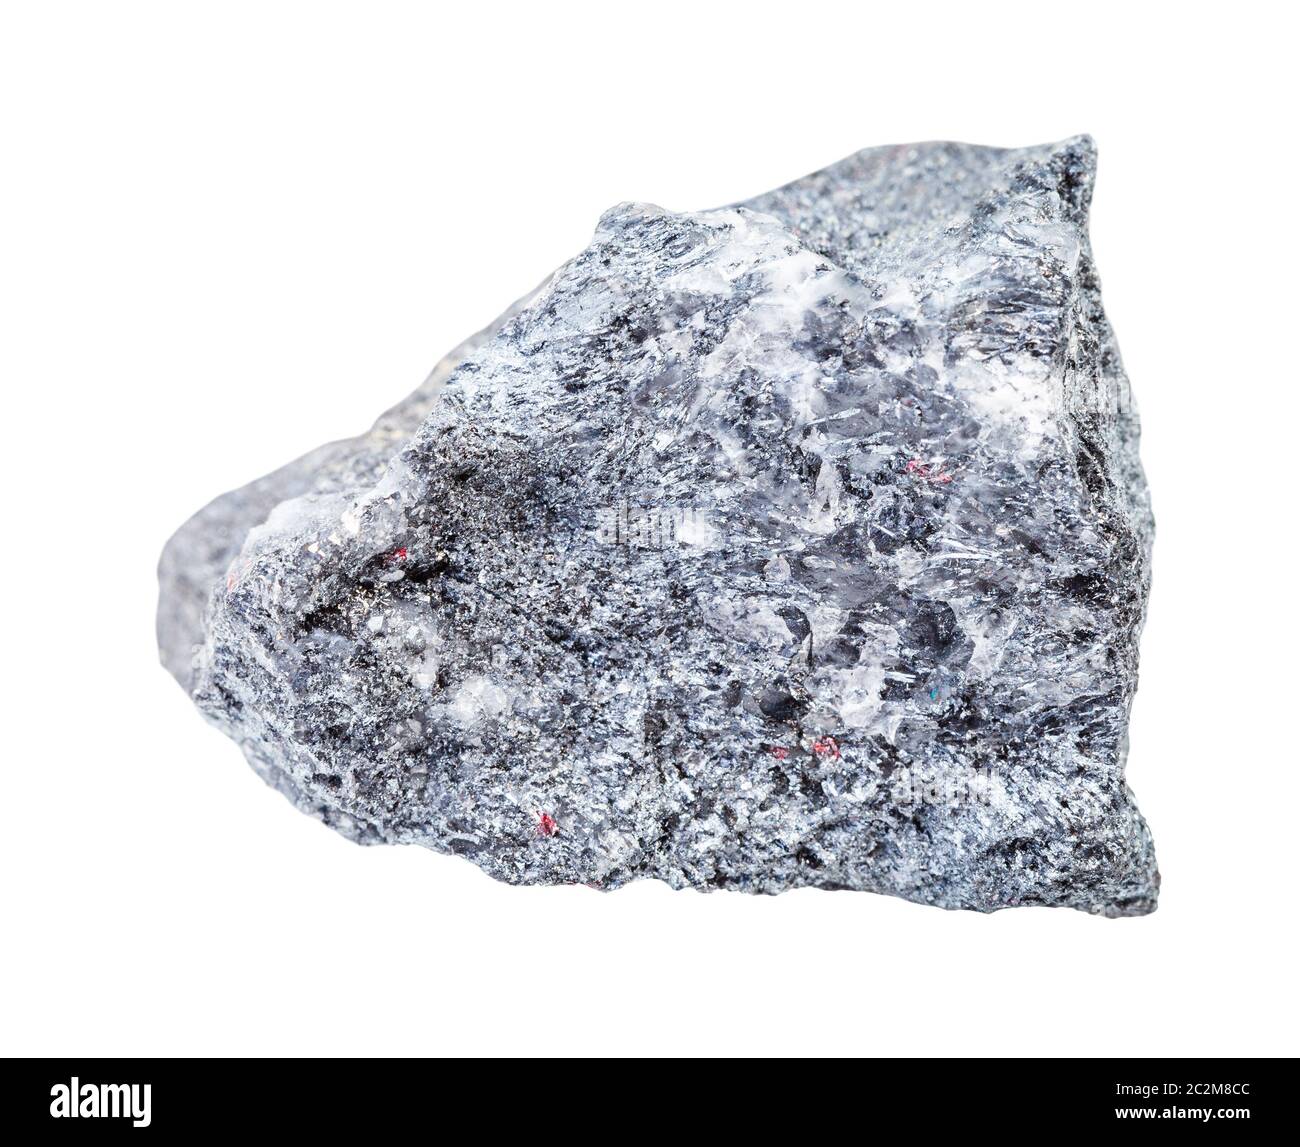 Gros plan de l'échantillon de minéraux naturels de la collection géologique - minerai de Stibnite rugueux (antimonite) isolé sur fond blanc Banque D'Images